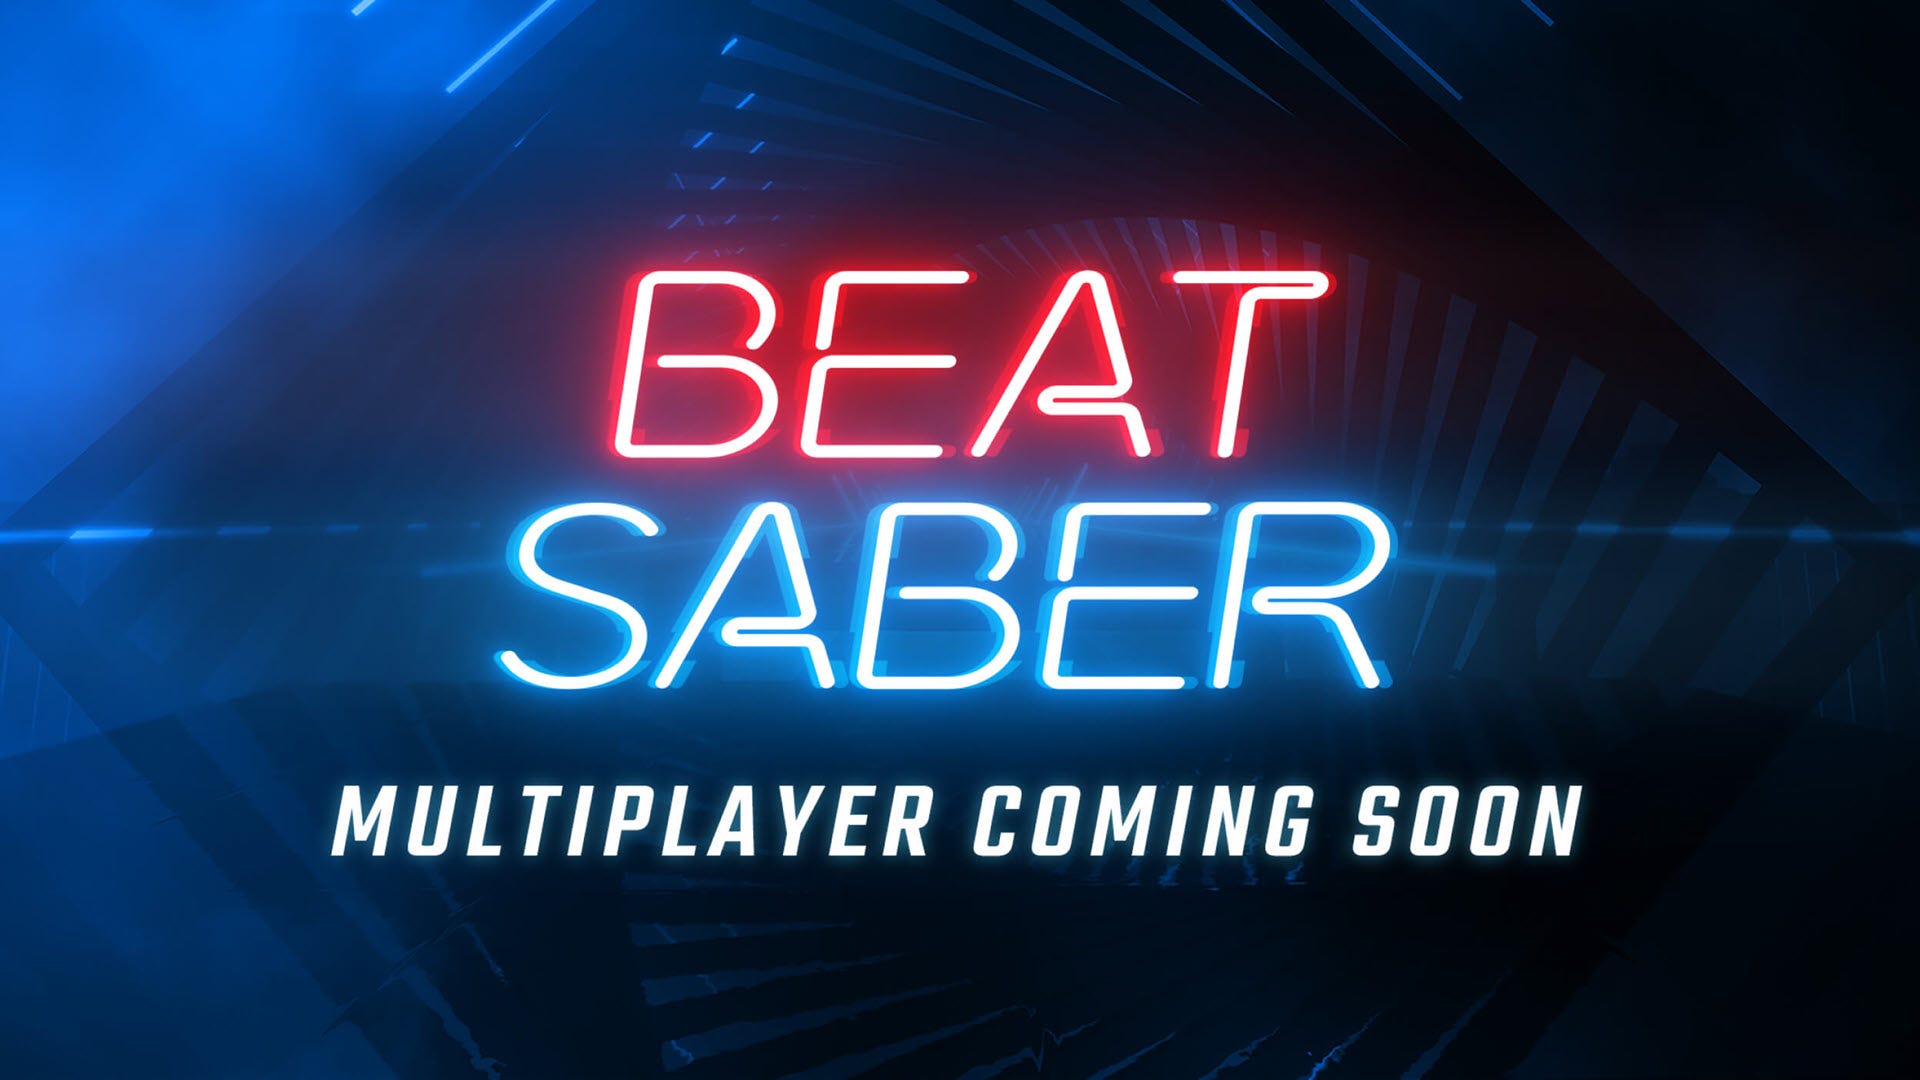 Bạn có thể cắt hộp với bạn bè trong Chế độ nhiều người chơi 'Beat Sabre' sắp tới